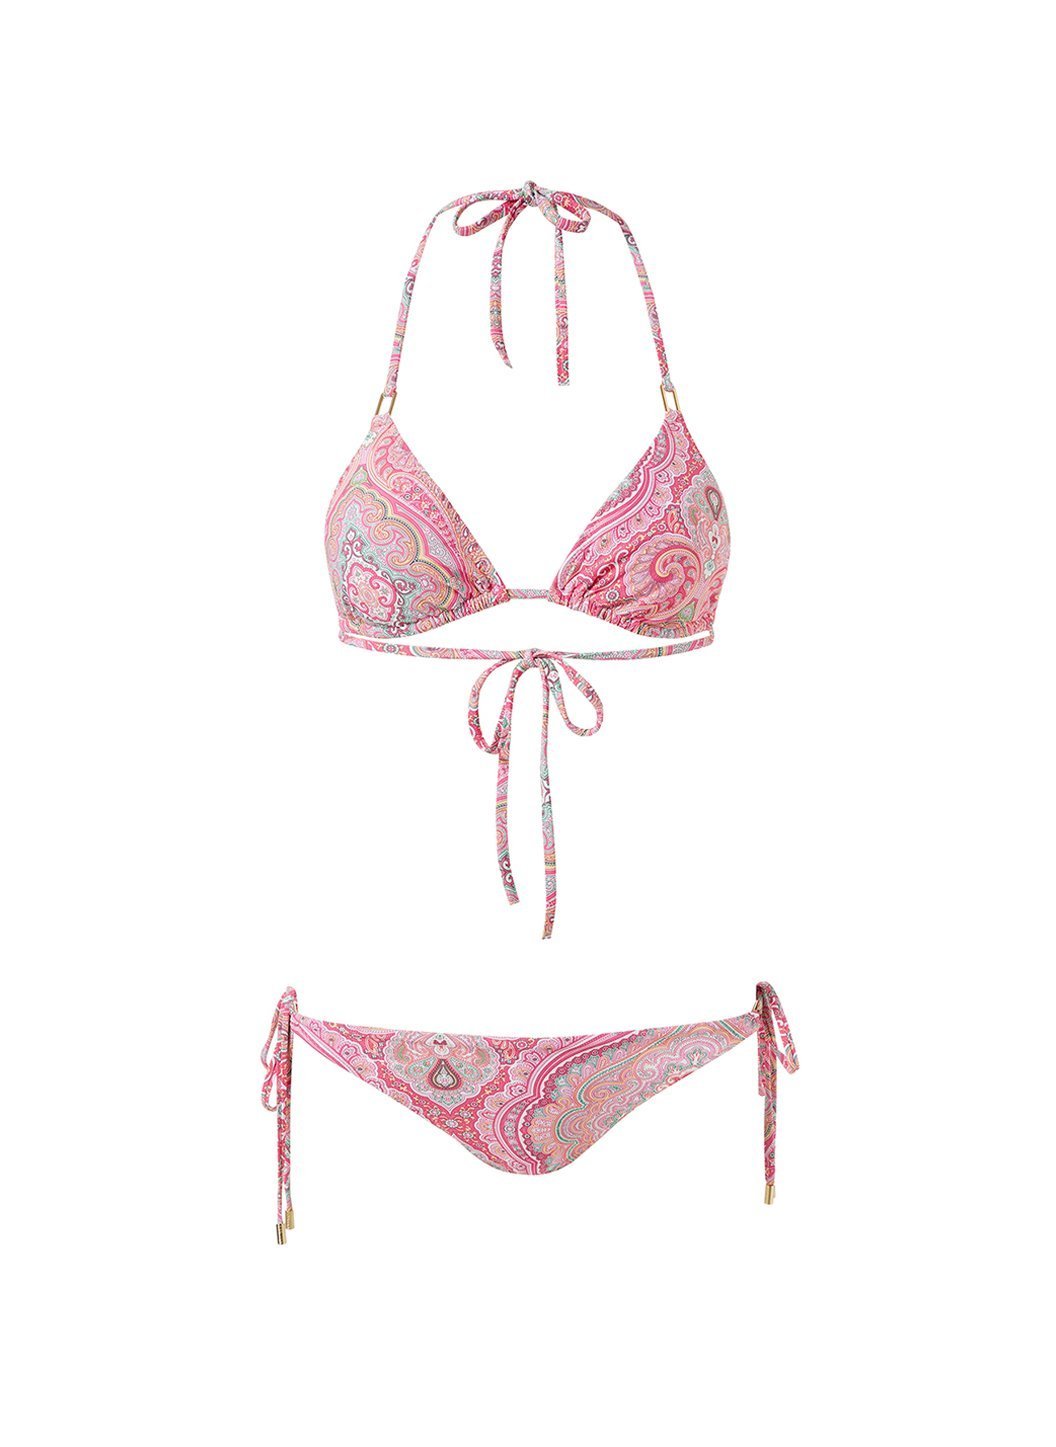 cancun blush paisley classic triangle bikini Cutout